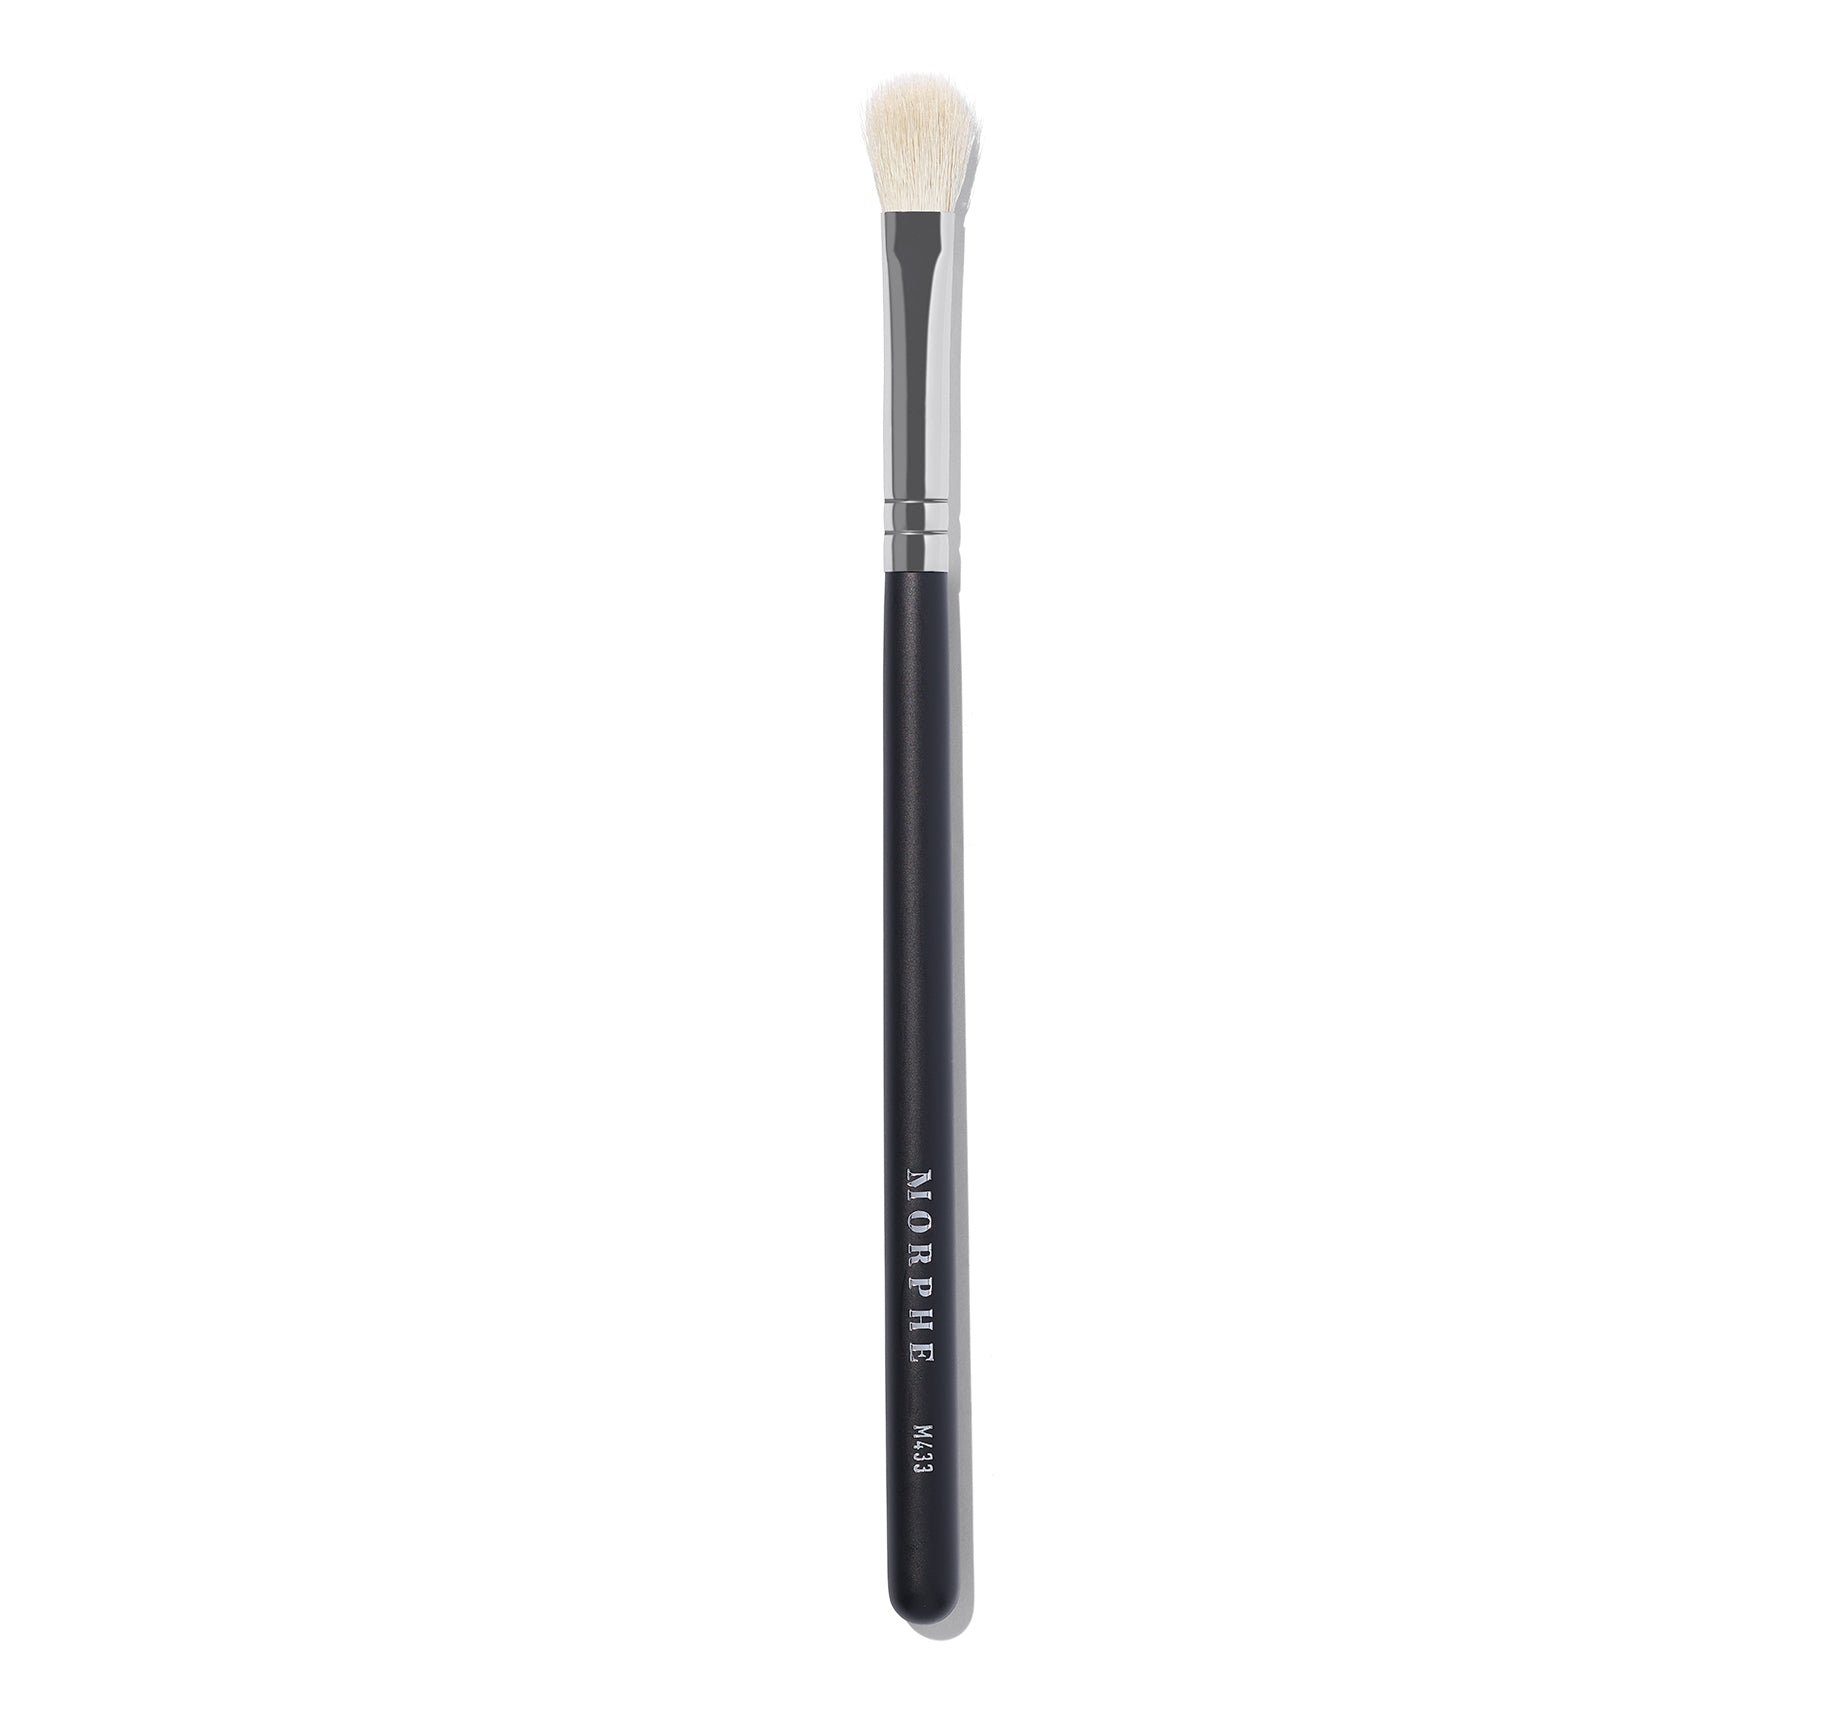 M433 Firm Blending Fluff Eyeshadow Brush